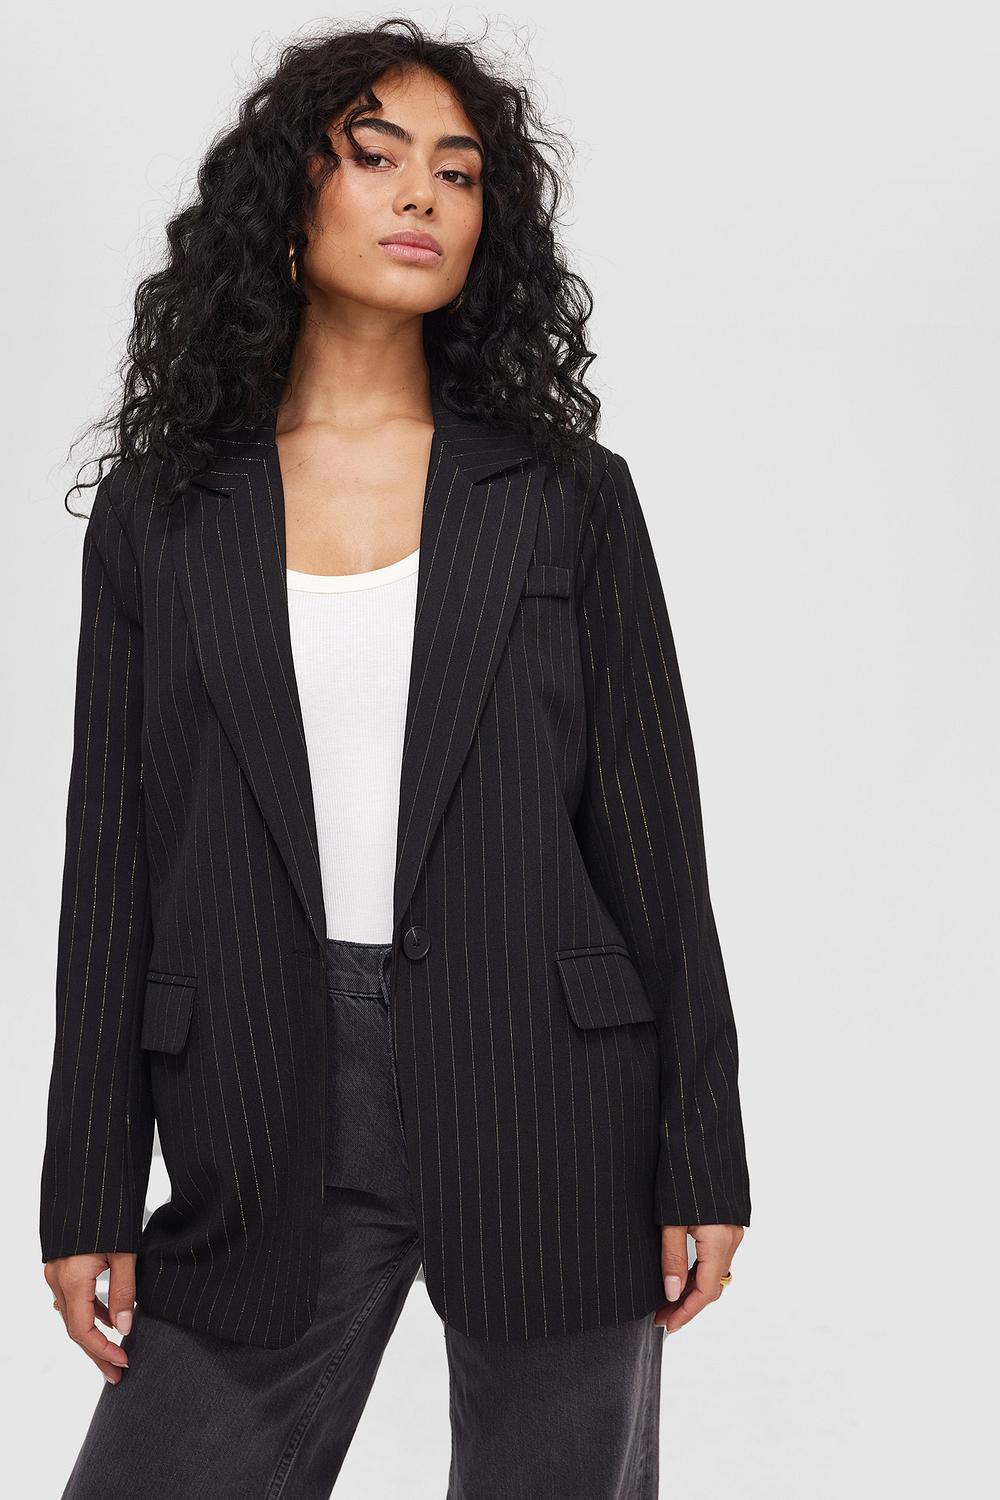 Black blazer with stripes